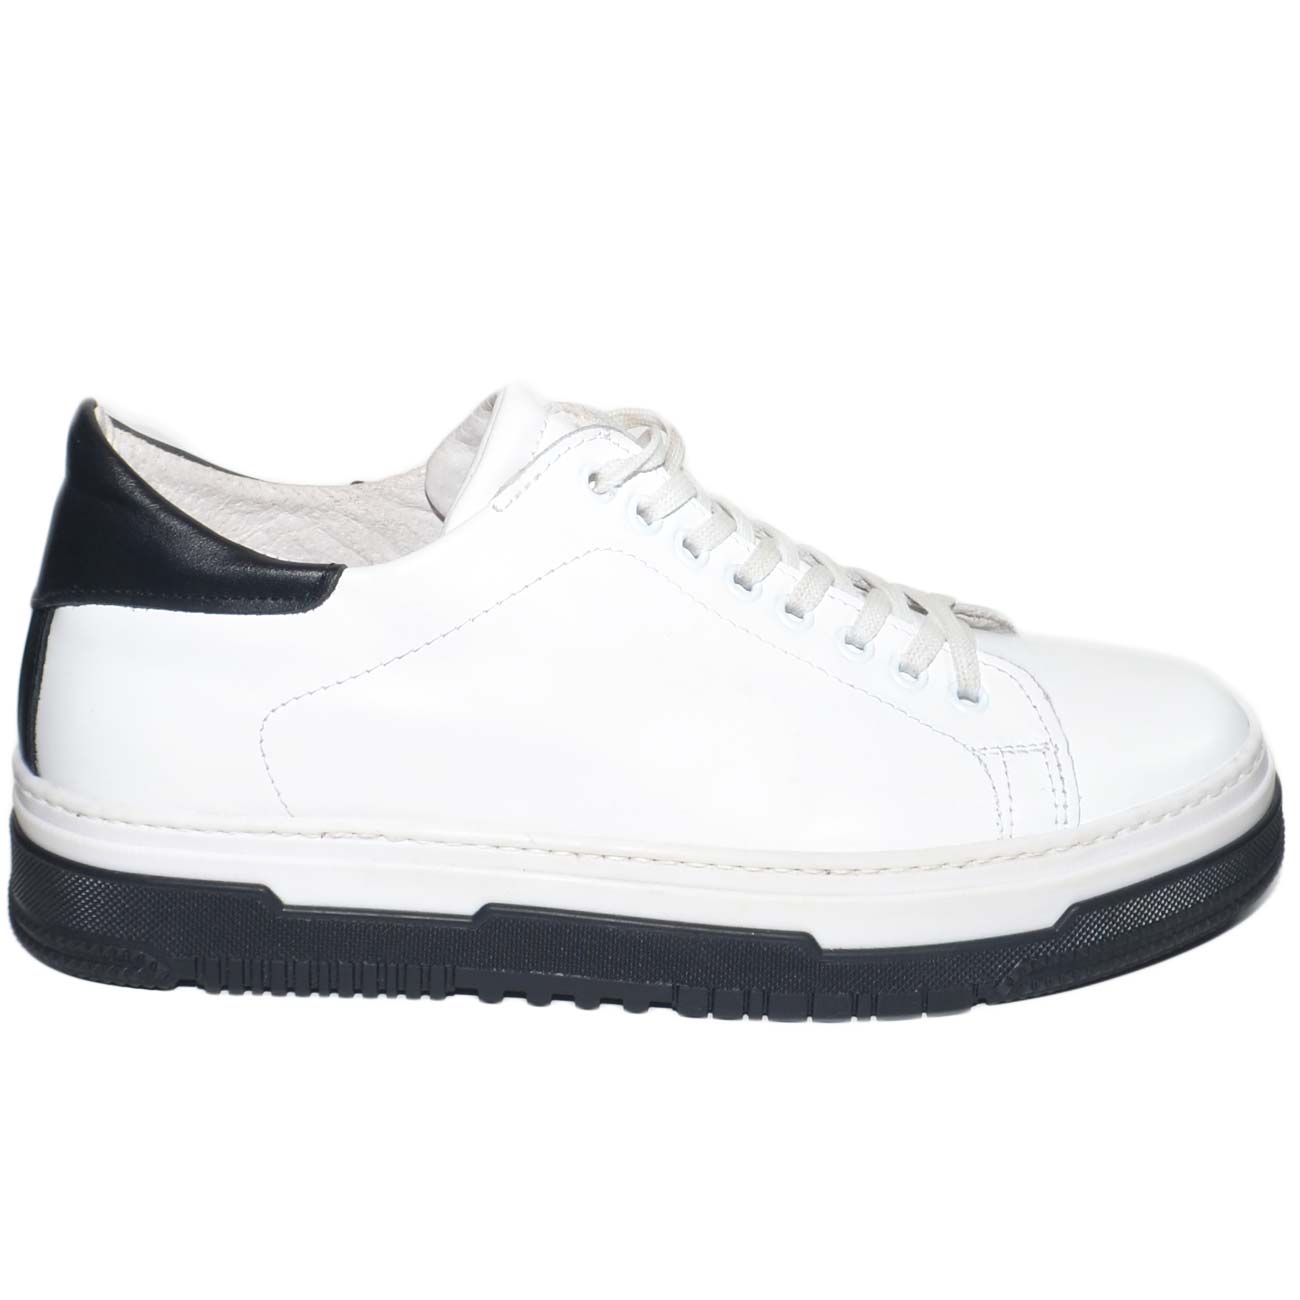 Sneakers uomo bassa bianca in vera pelle liscia con fortino nero fondo a cassettoni bicolore comfort moda made in italy